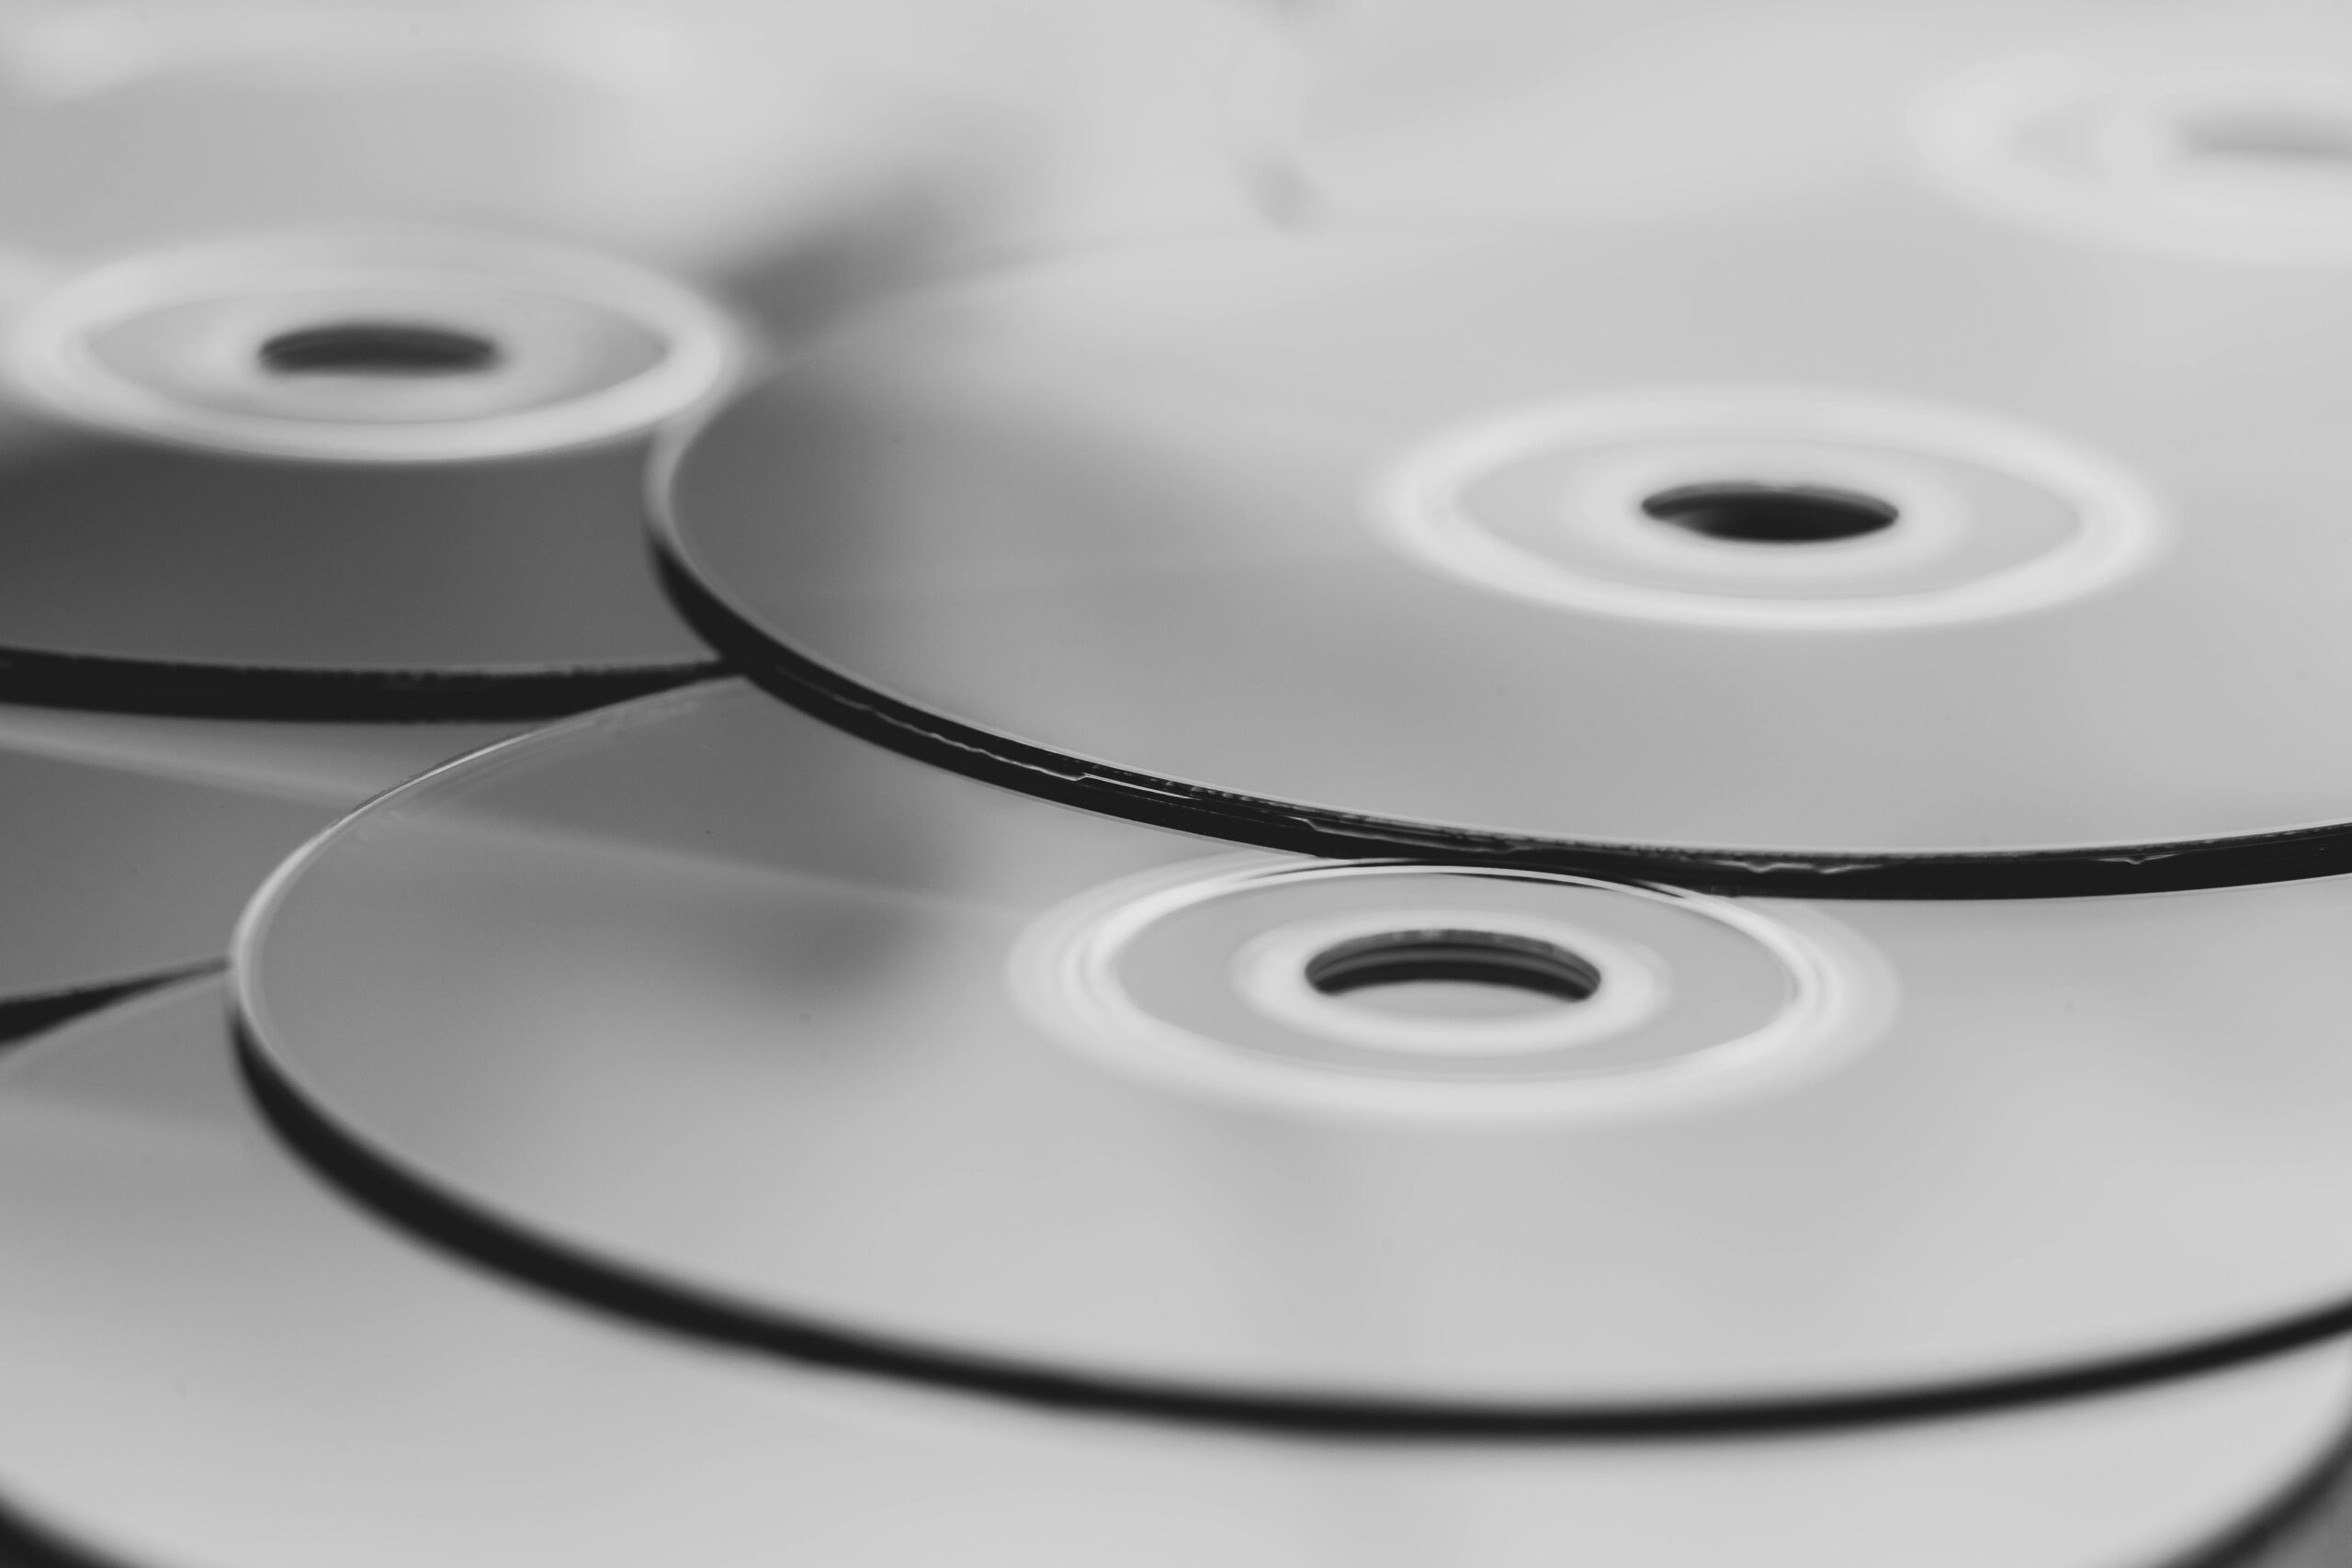 DVD-Laufwerk liest keine DVDs mehr und macht Geräusche - Lösung